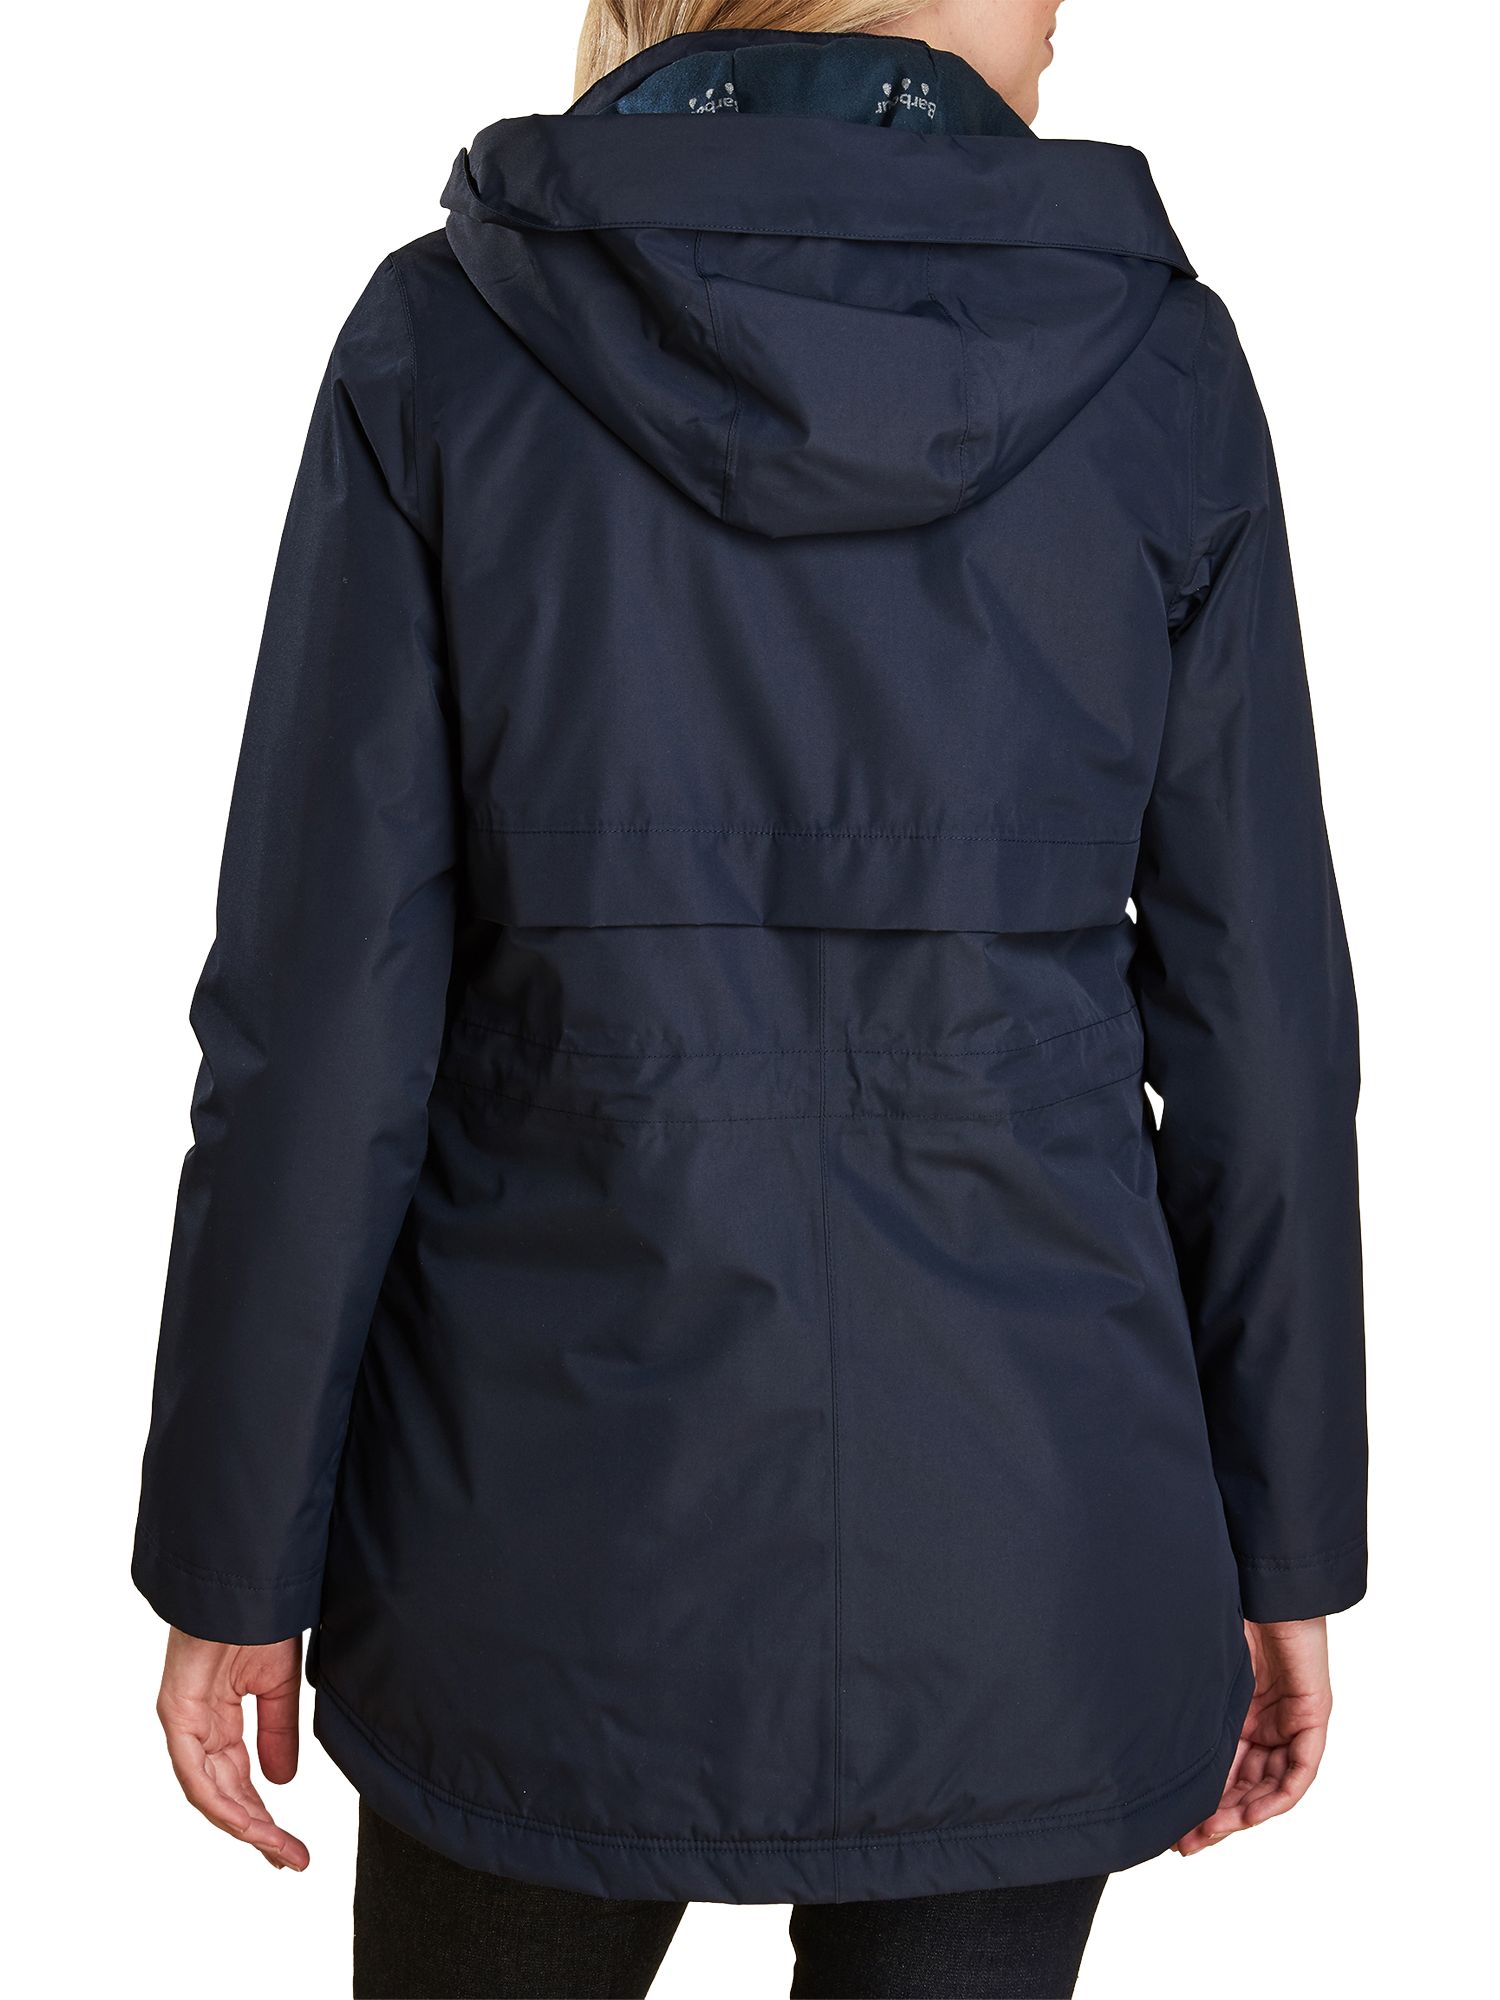 barbour altair waterproof breathable jacket